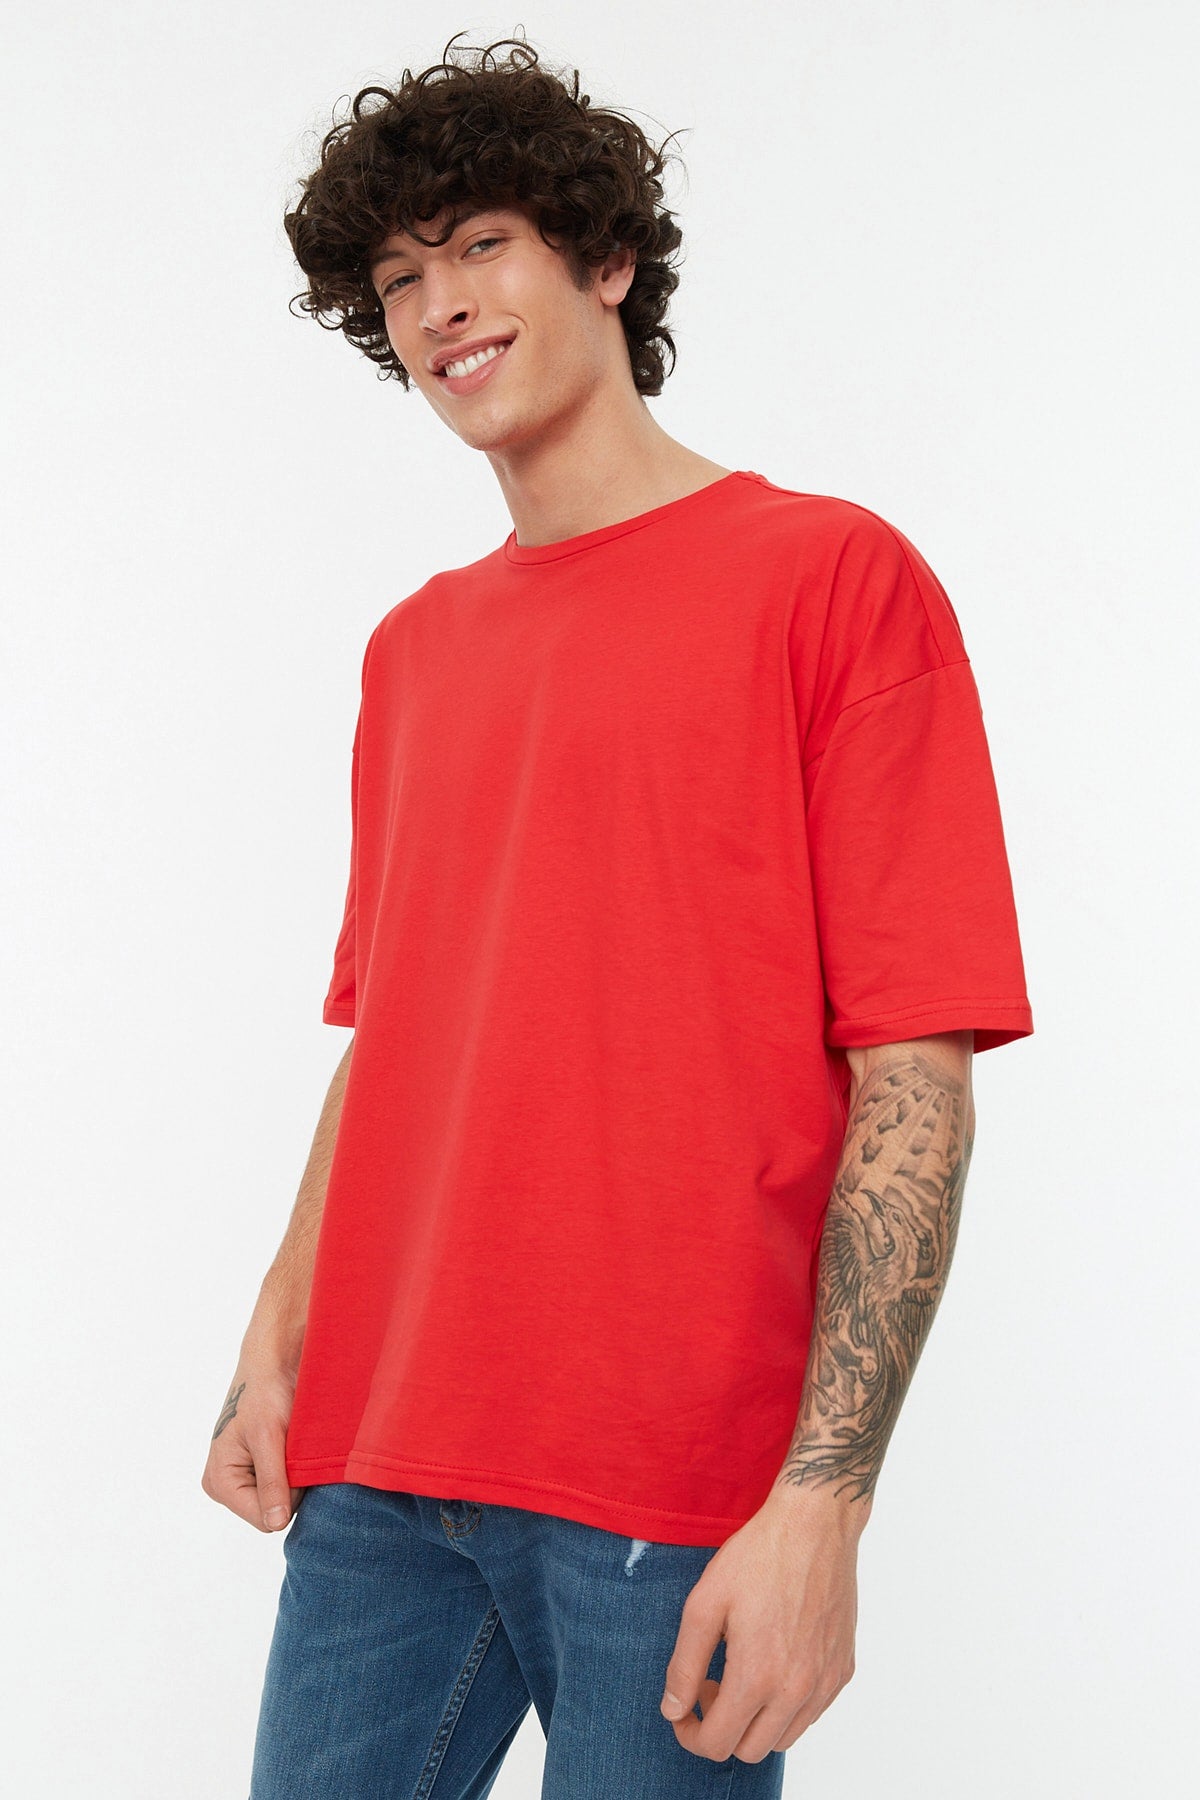 Red Men's Basic 100% Cotton Crew Neck Oversize Short Sleeved T-Shirt